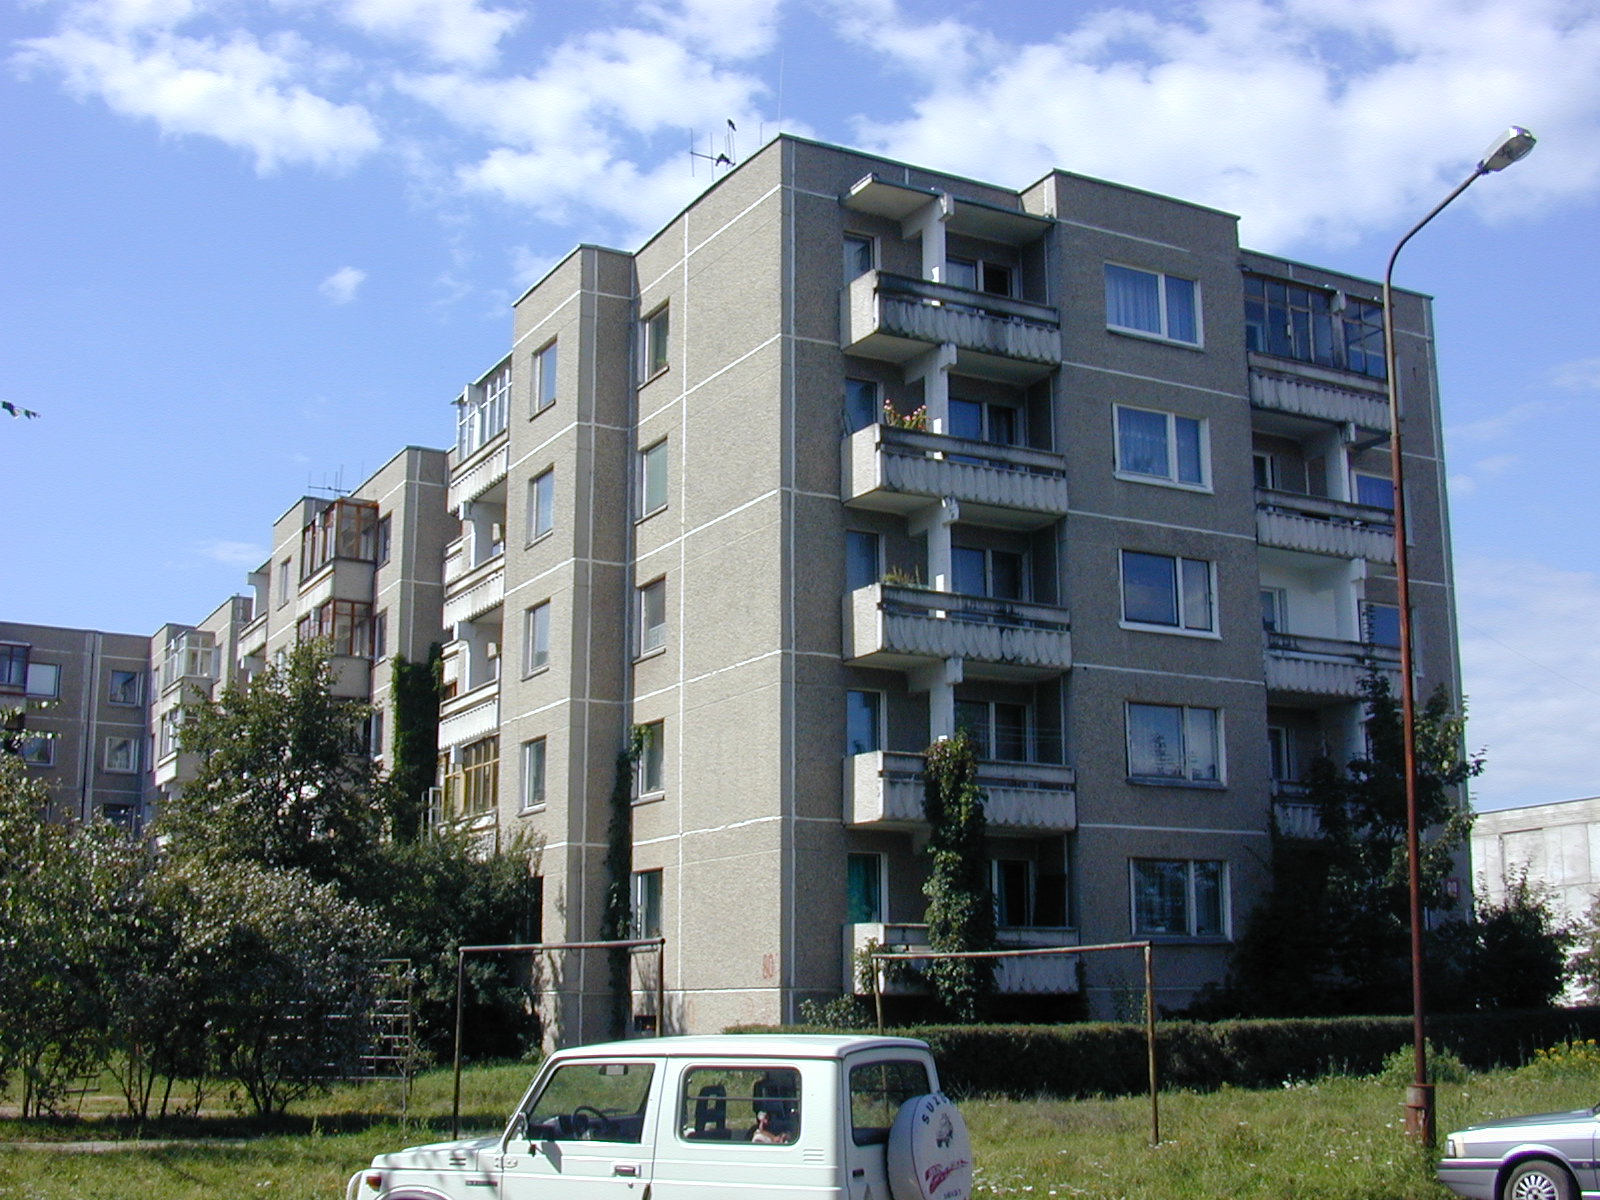 Justiniškių g. 80, Vilnius